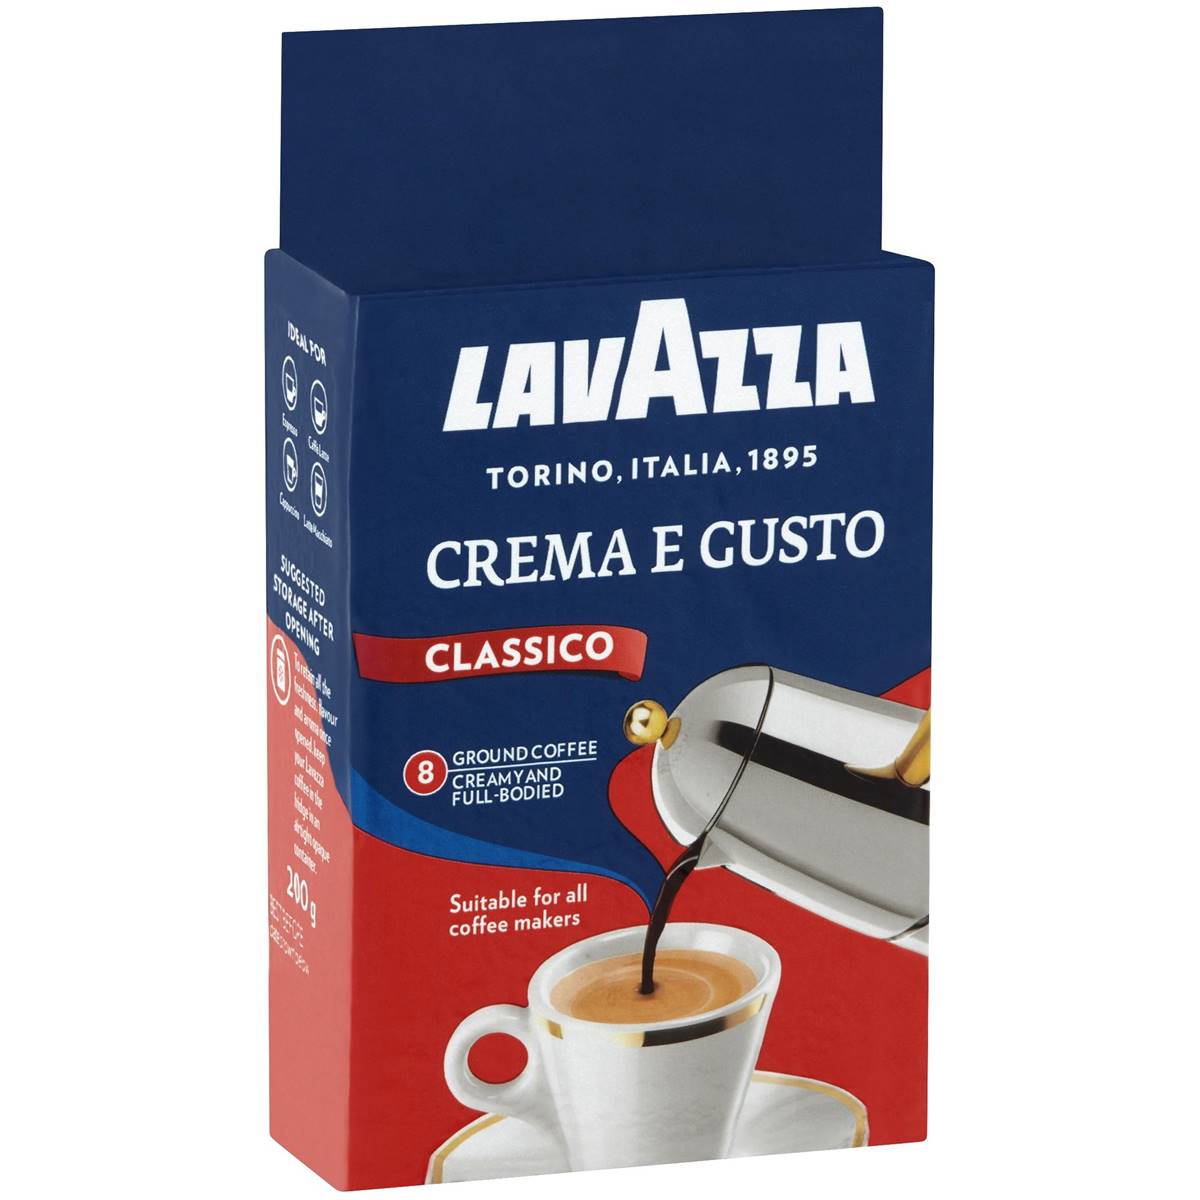 Lavazza Ground Coffee Crema E Gusto